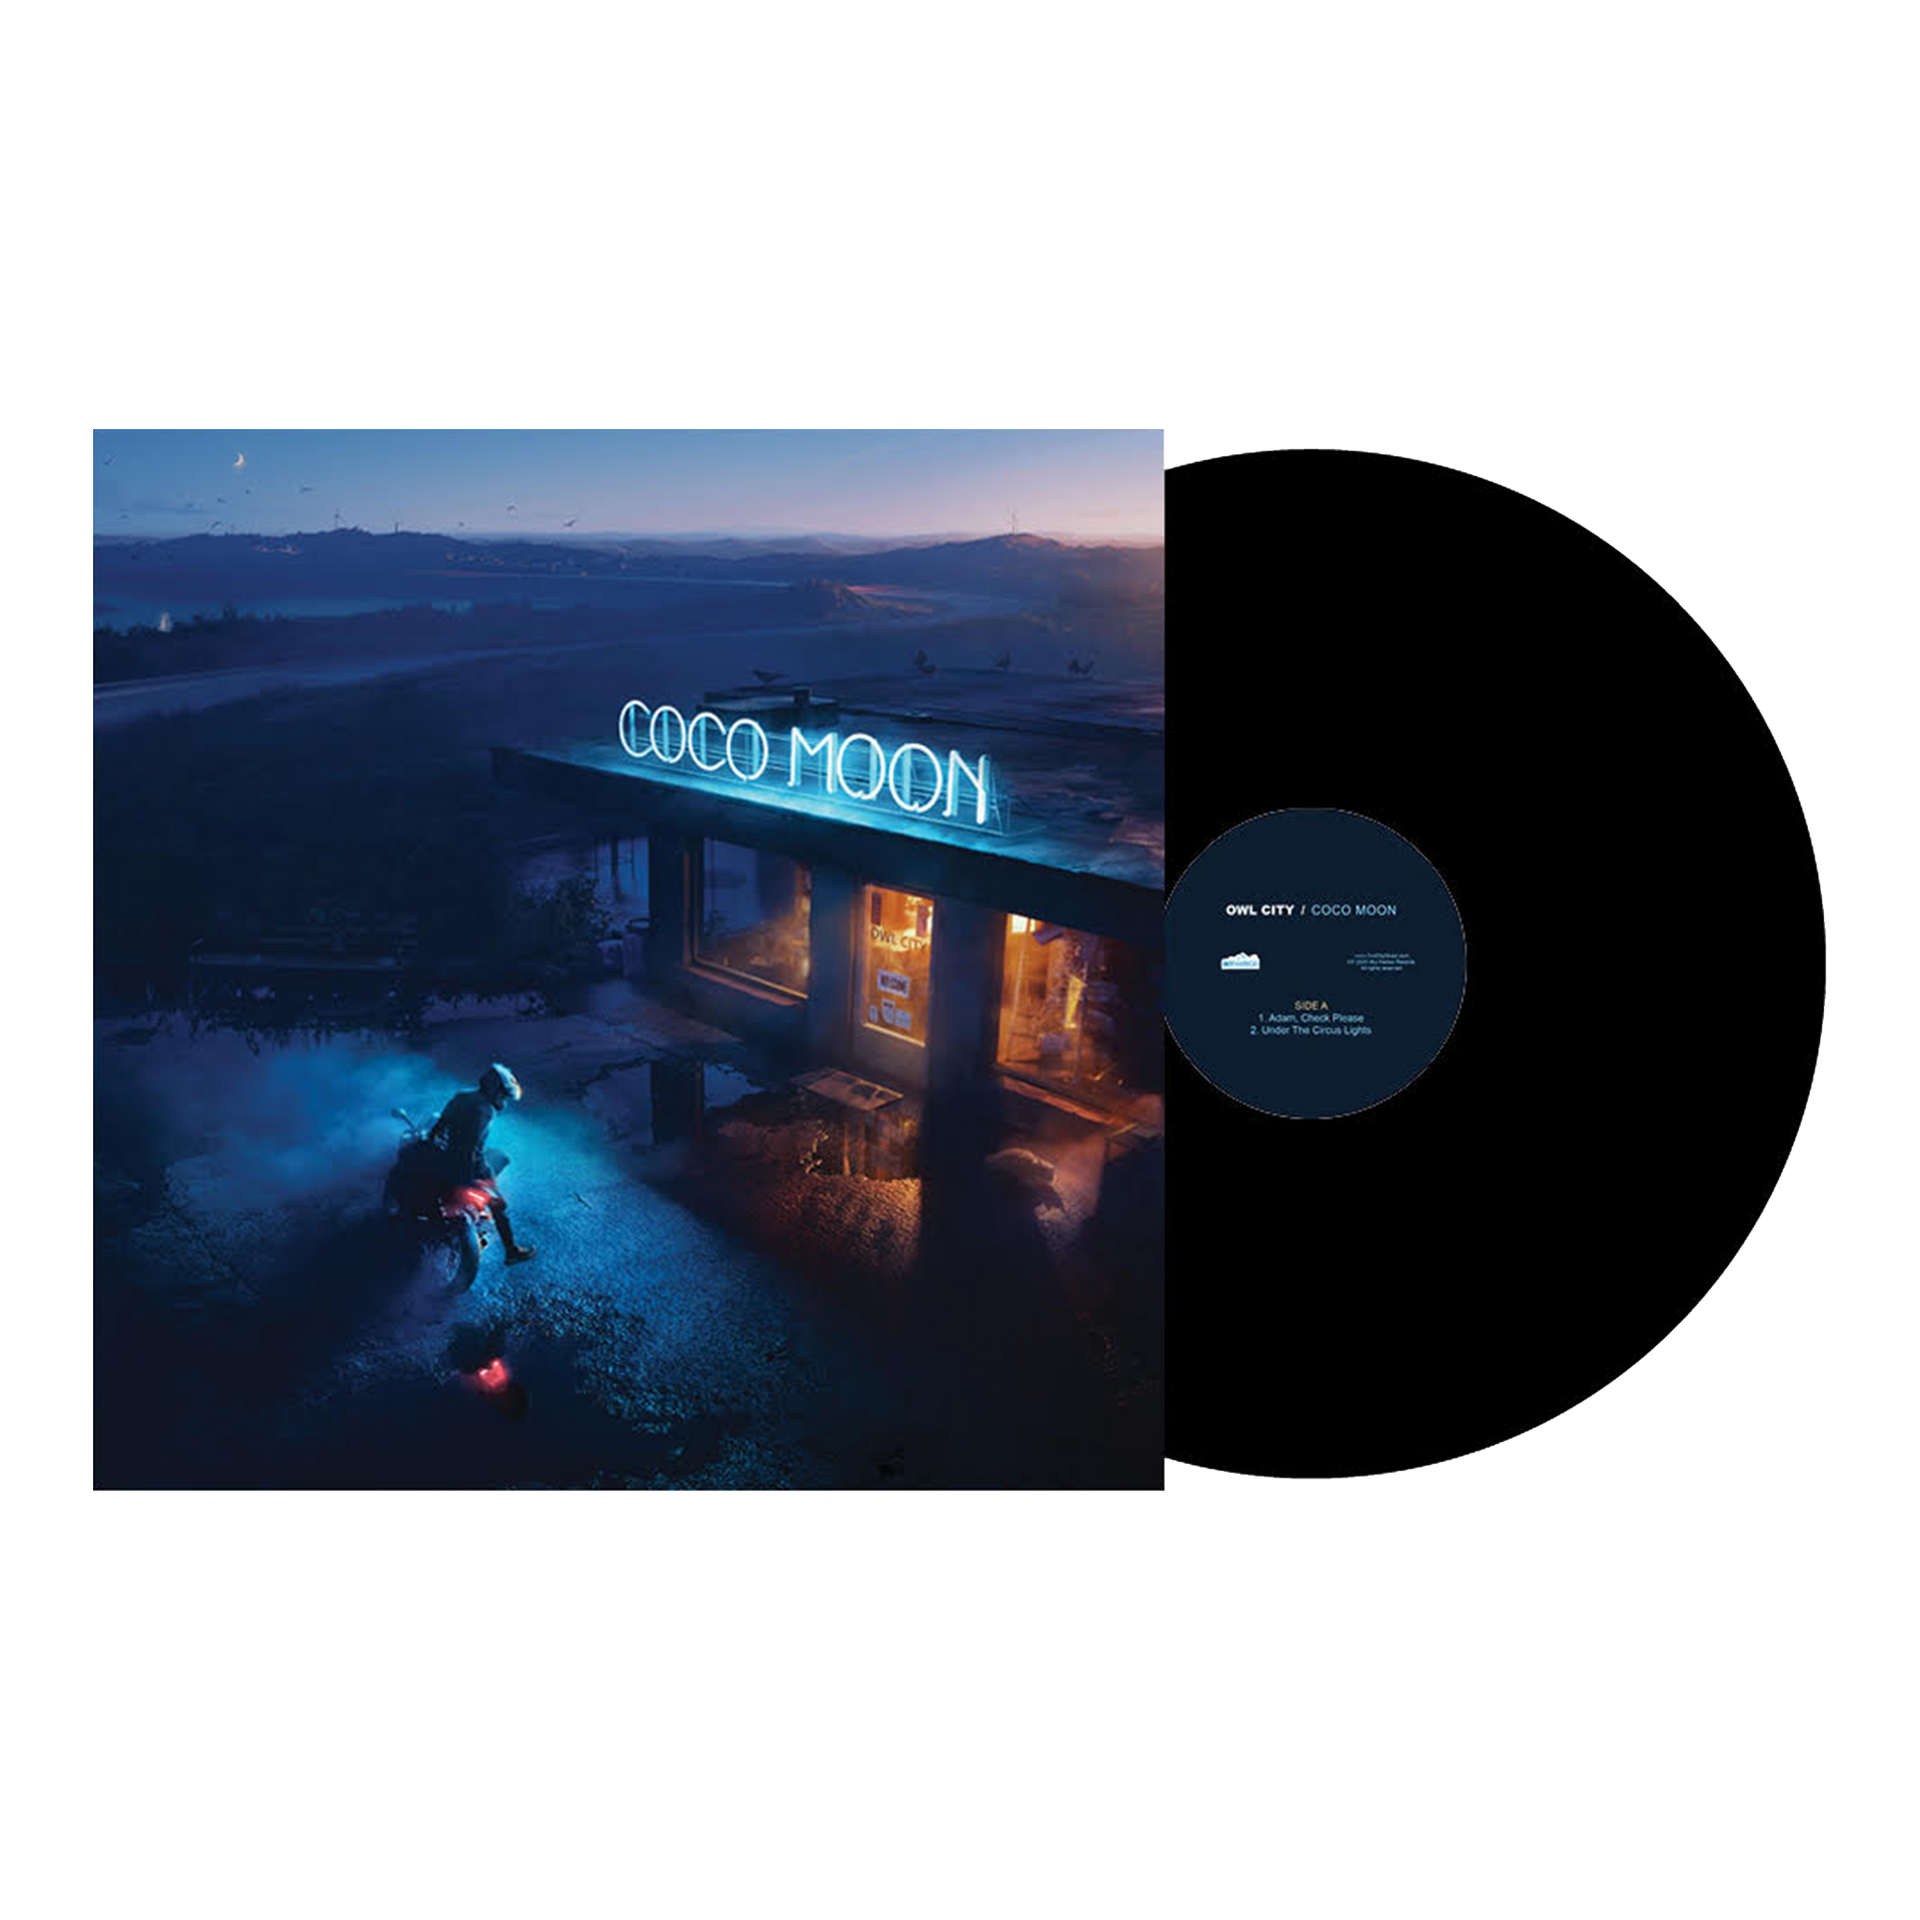 Owl City: Coco Moon Vinyl LP